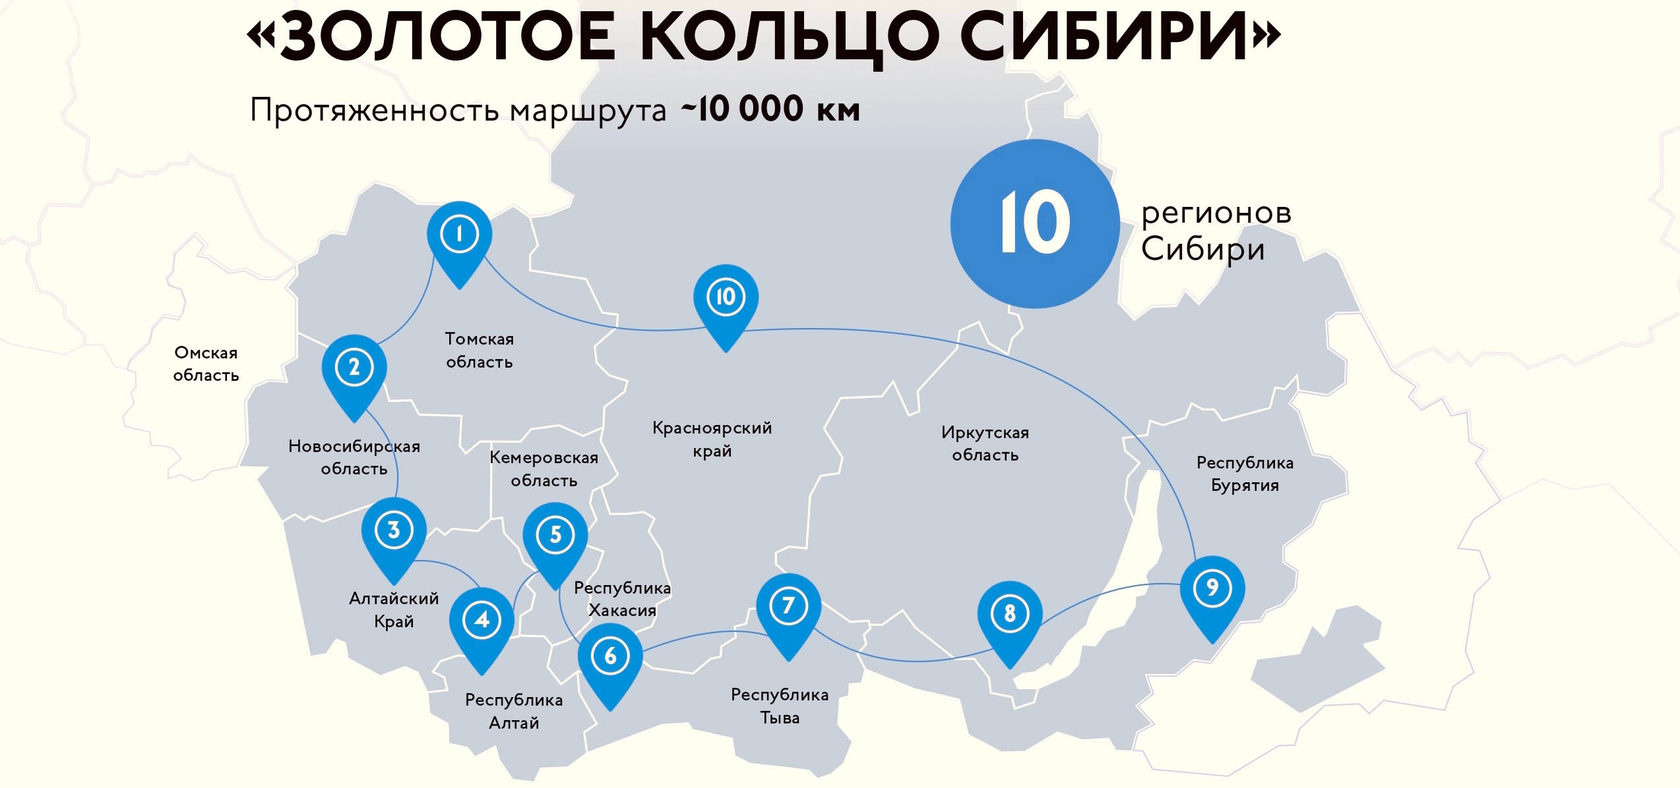 Наслаждайтесь непревзойденной красотой исторических городов России - уникальные туристические маршруты по Золотому Кольцу